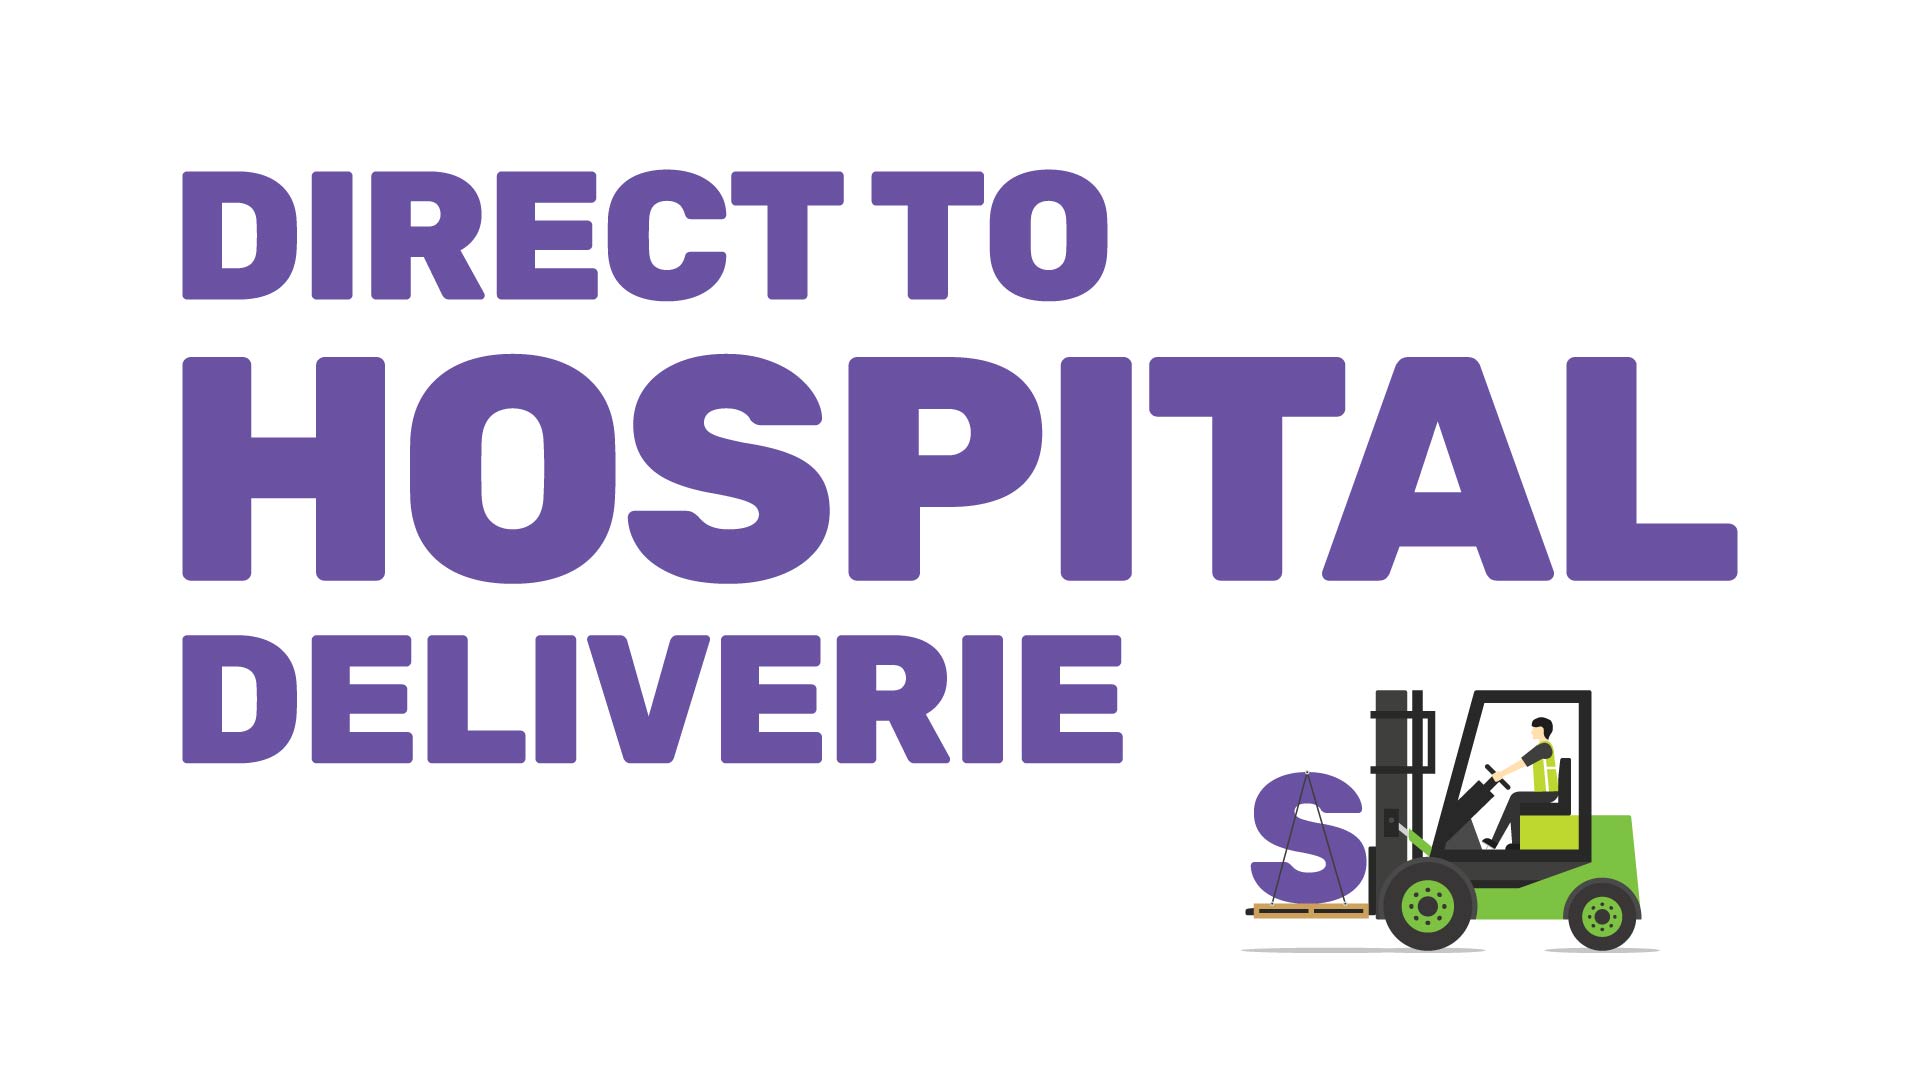 Direct to hospital deliveries brand illustration.